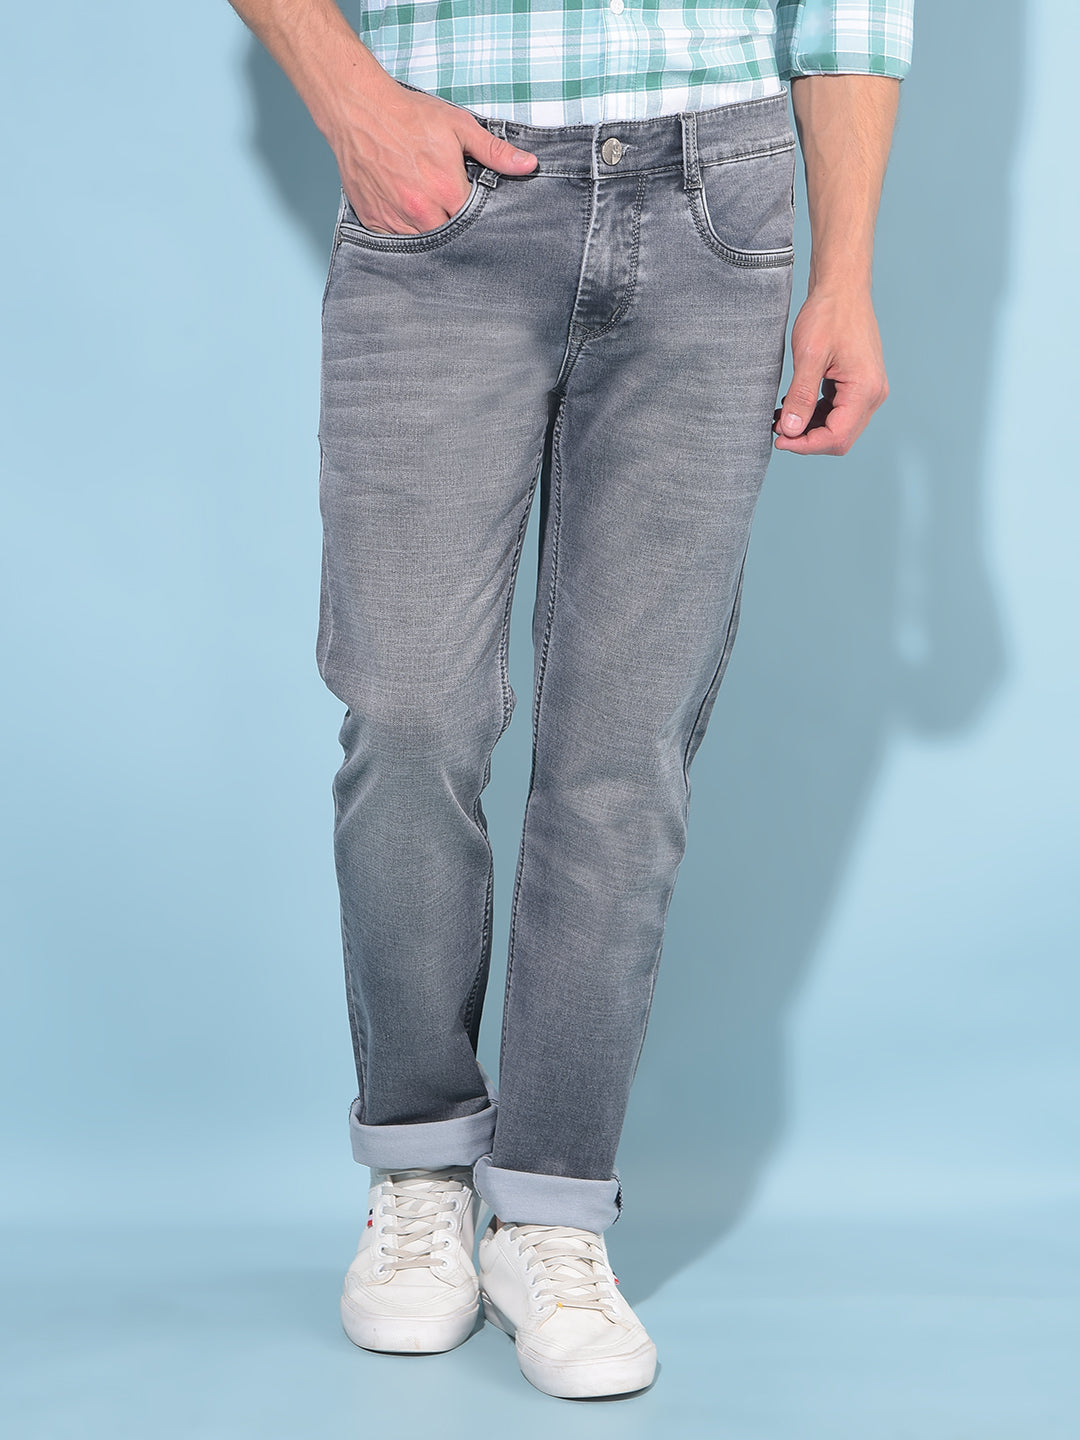 Grey Straight Cotton Jeans-Men Jeans-Crimsoune Club